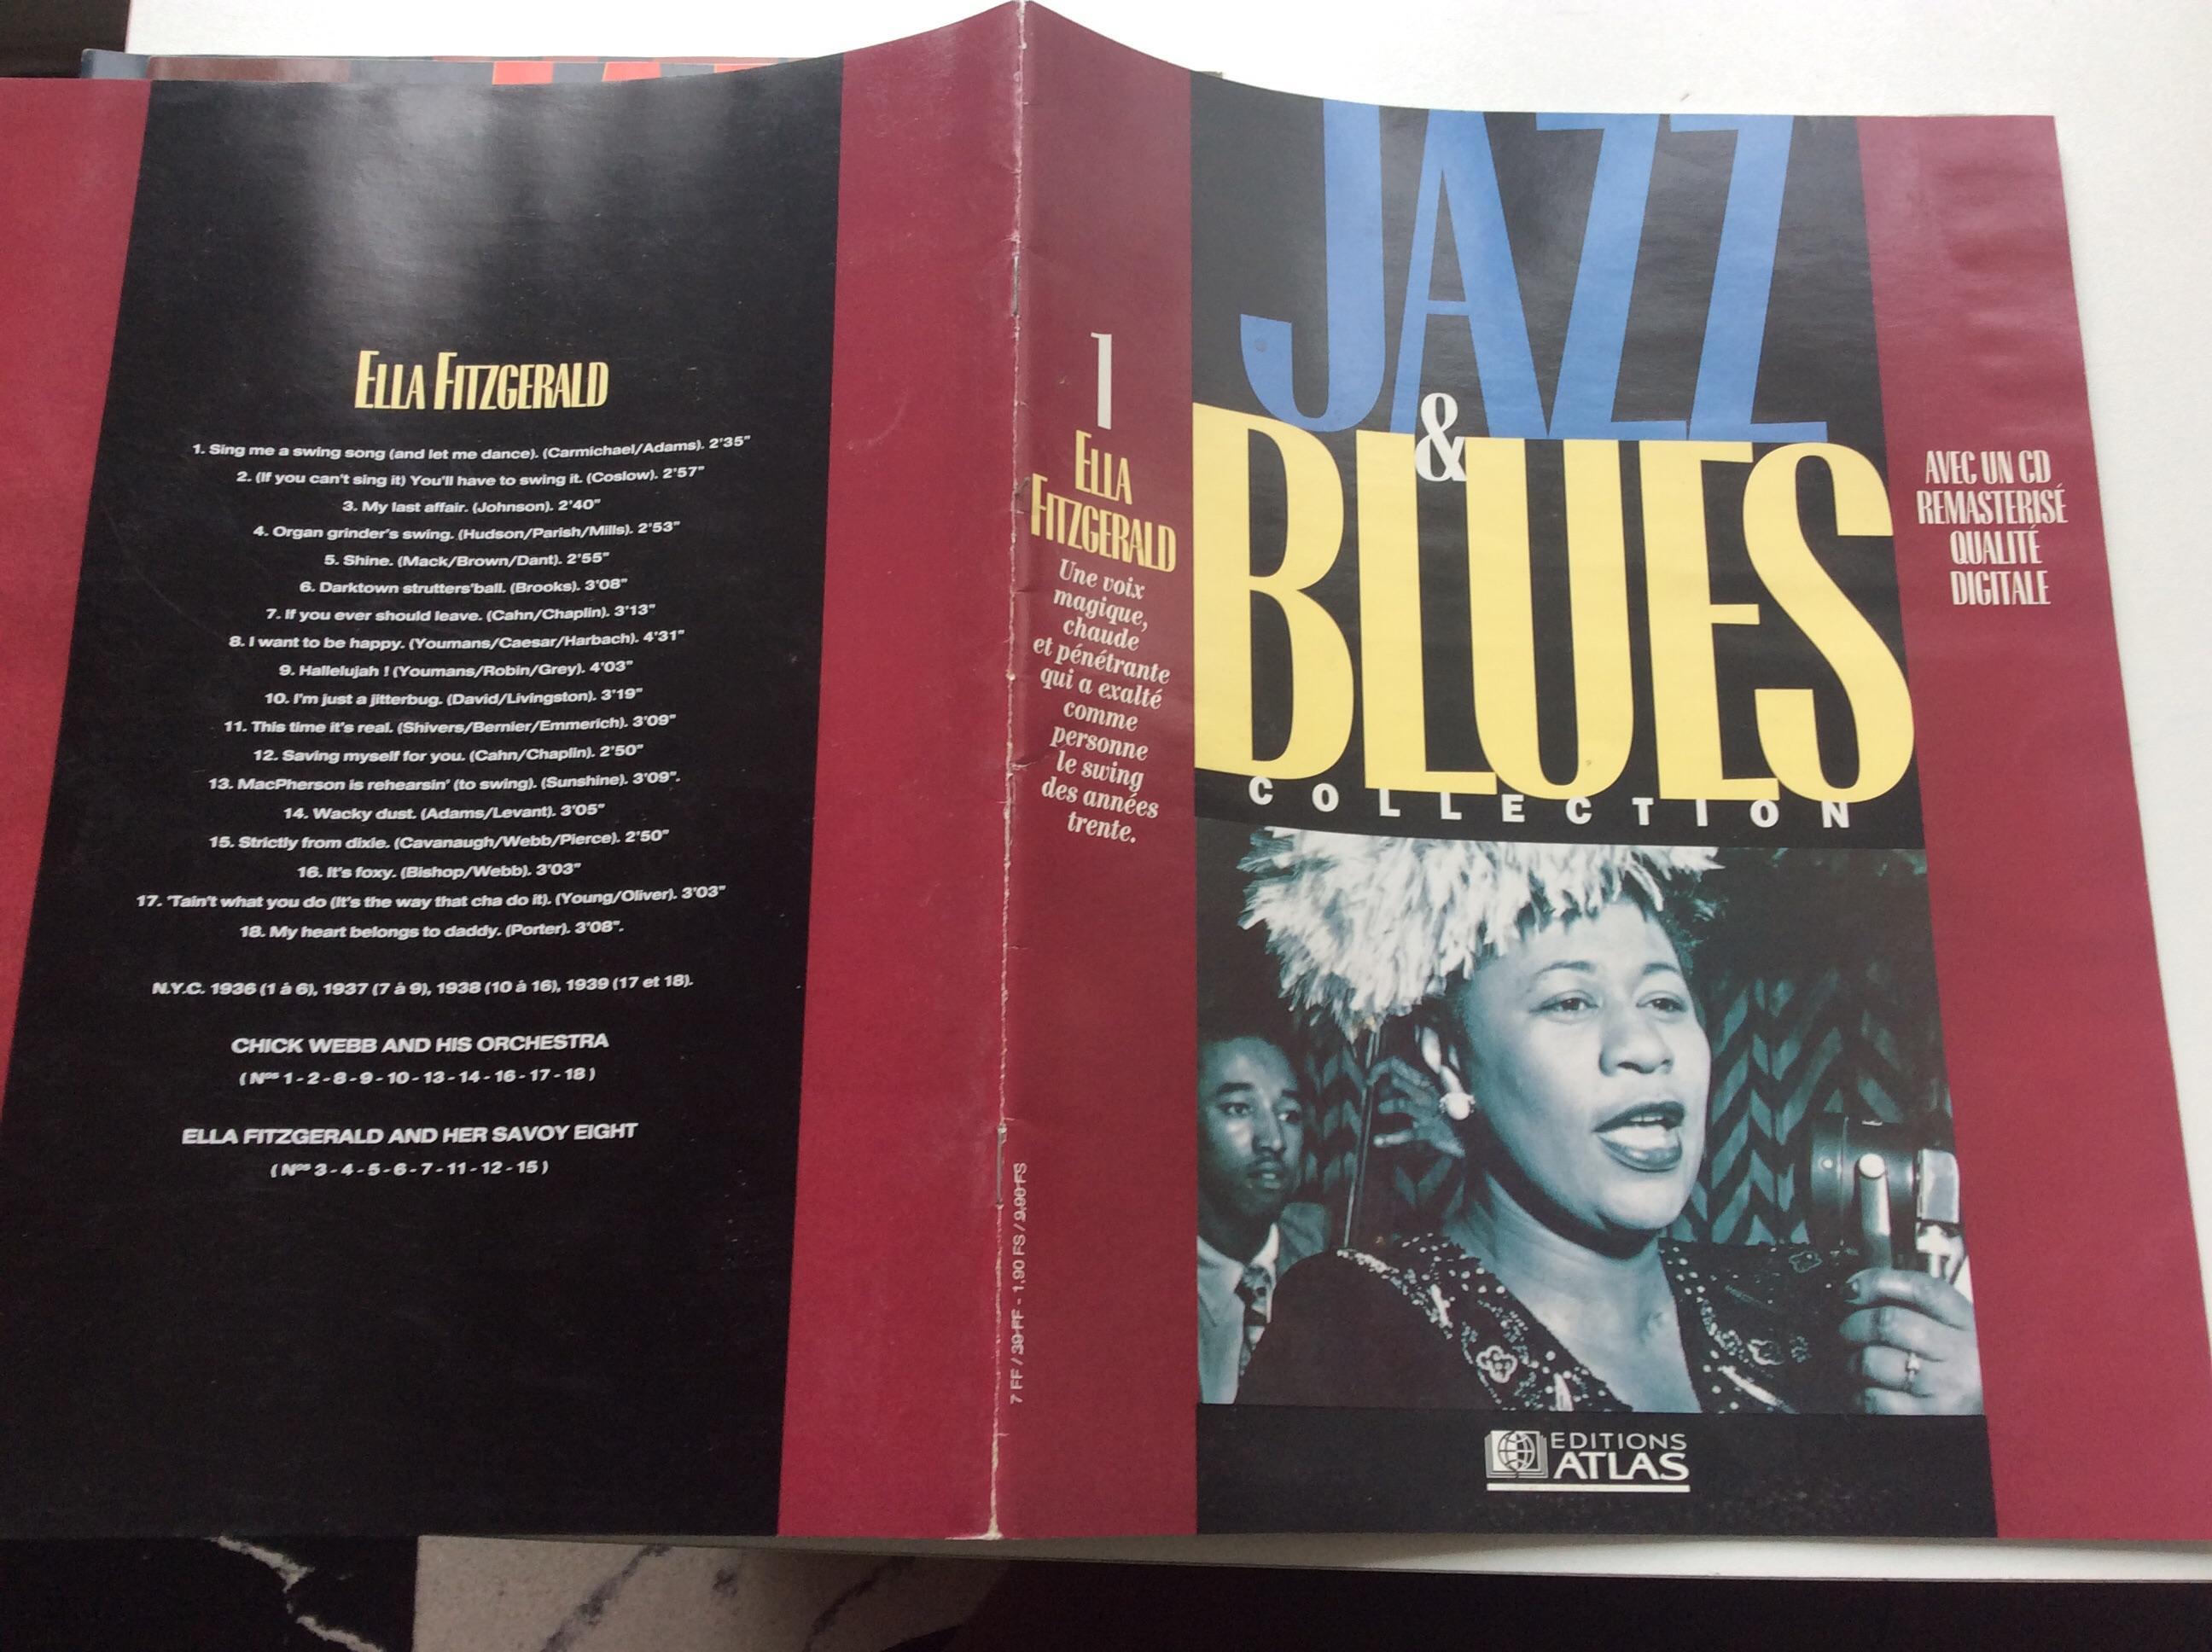 troc de troc fascicule jazz & blues collection sans le cd ella  fitzgerald image 0